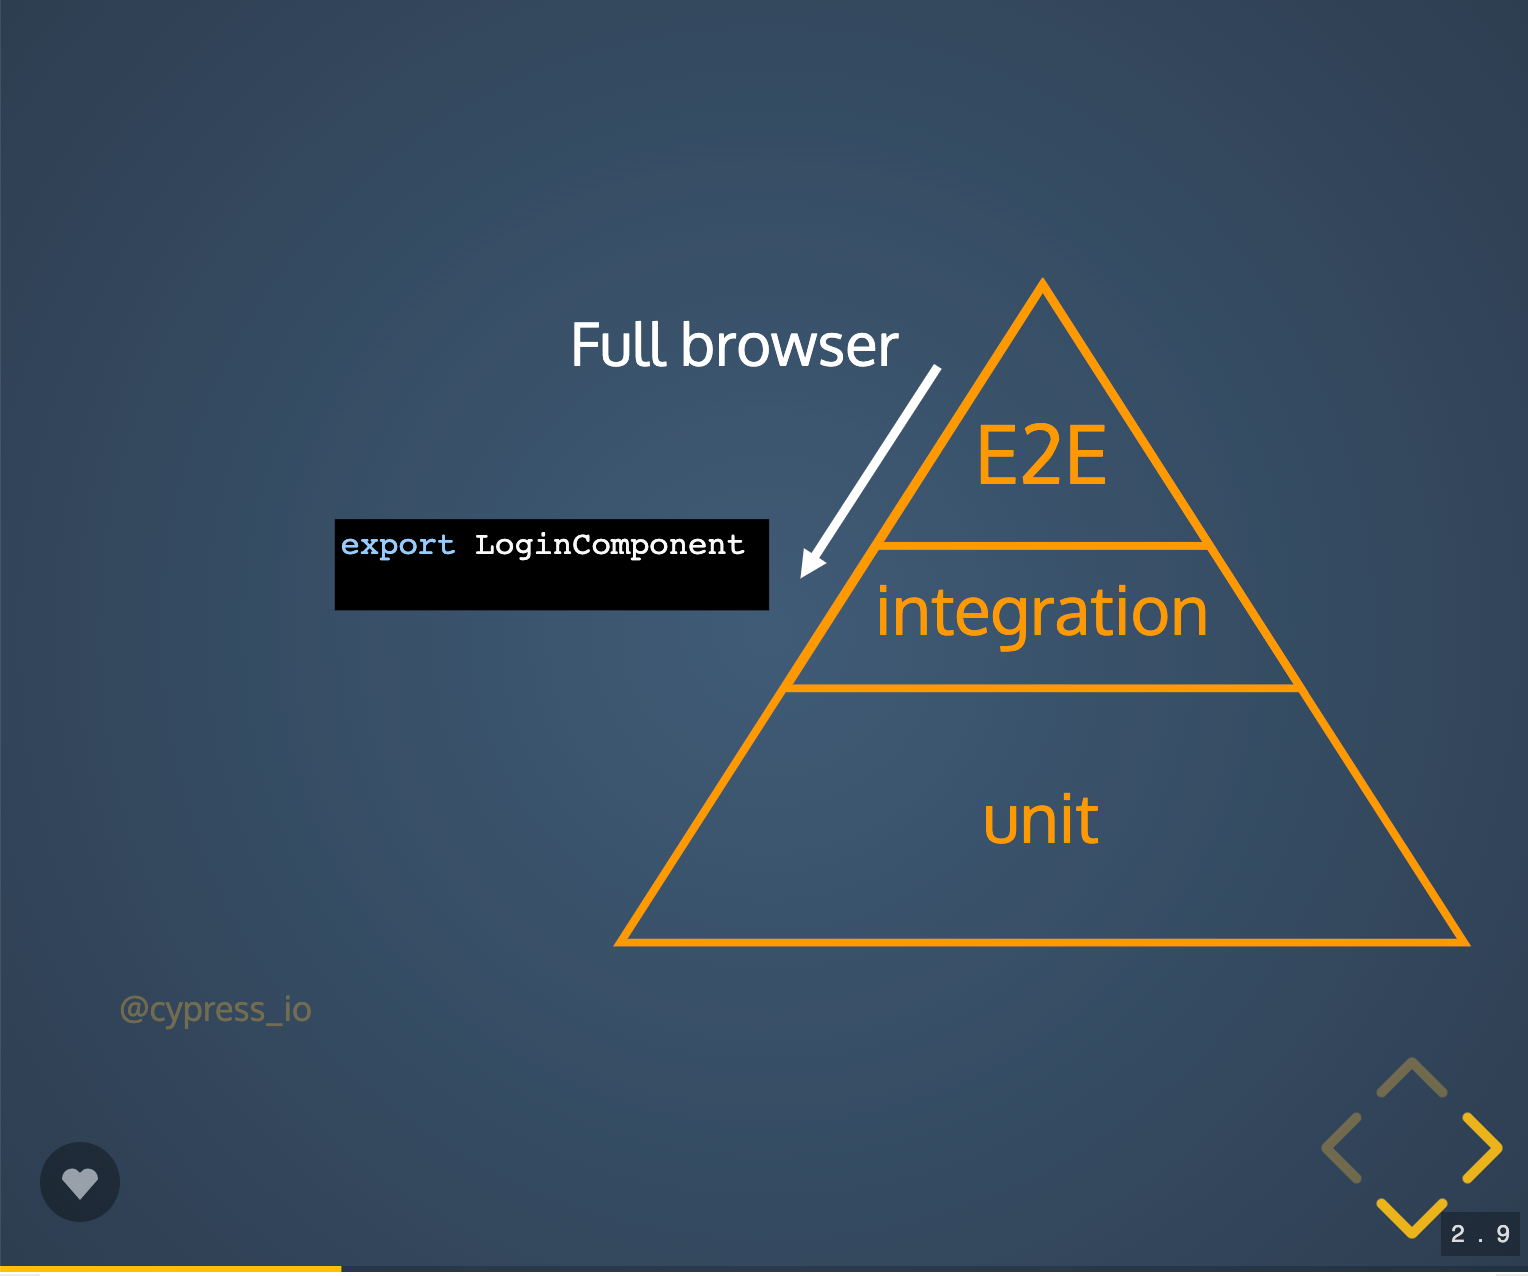 E2E test runner makes integration/component testing simpler